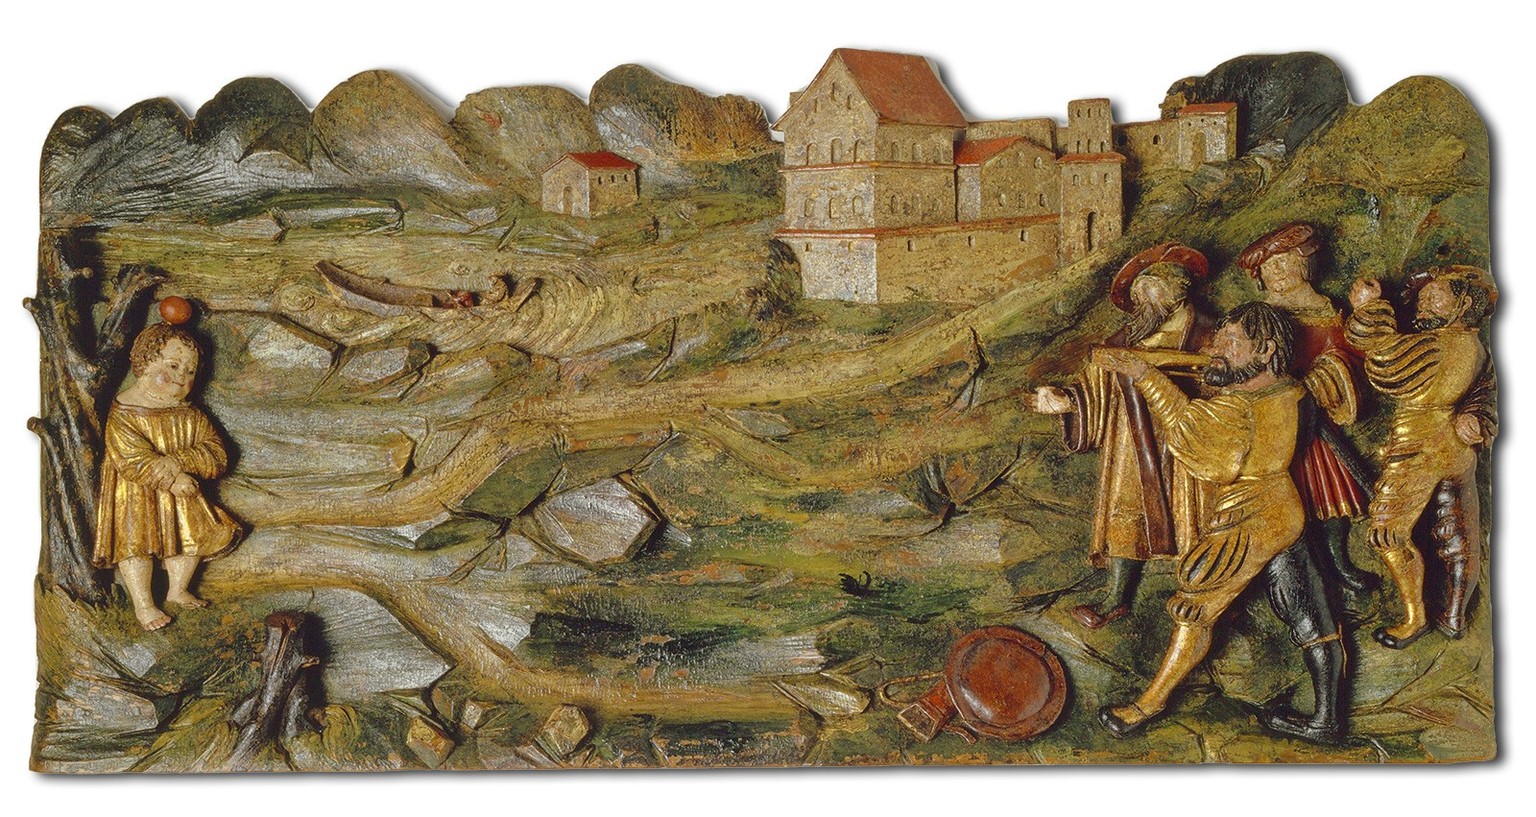 Décor mural représentant Guillaume Tell tirant sur la pomme, vers 1523.
https://permalink.nationalmuseum.ch/100106949